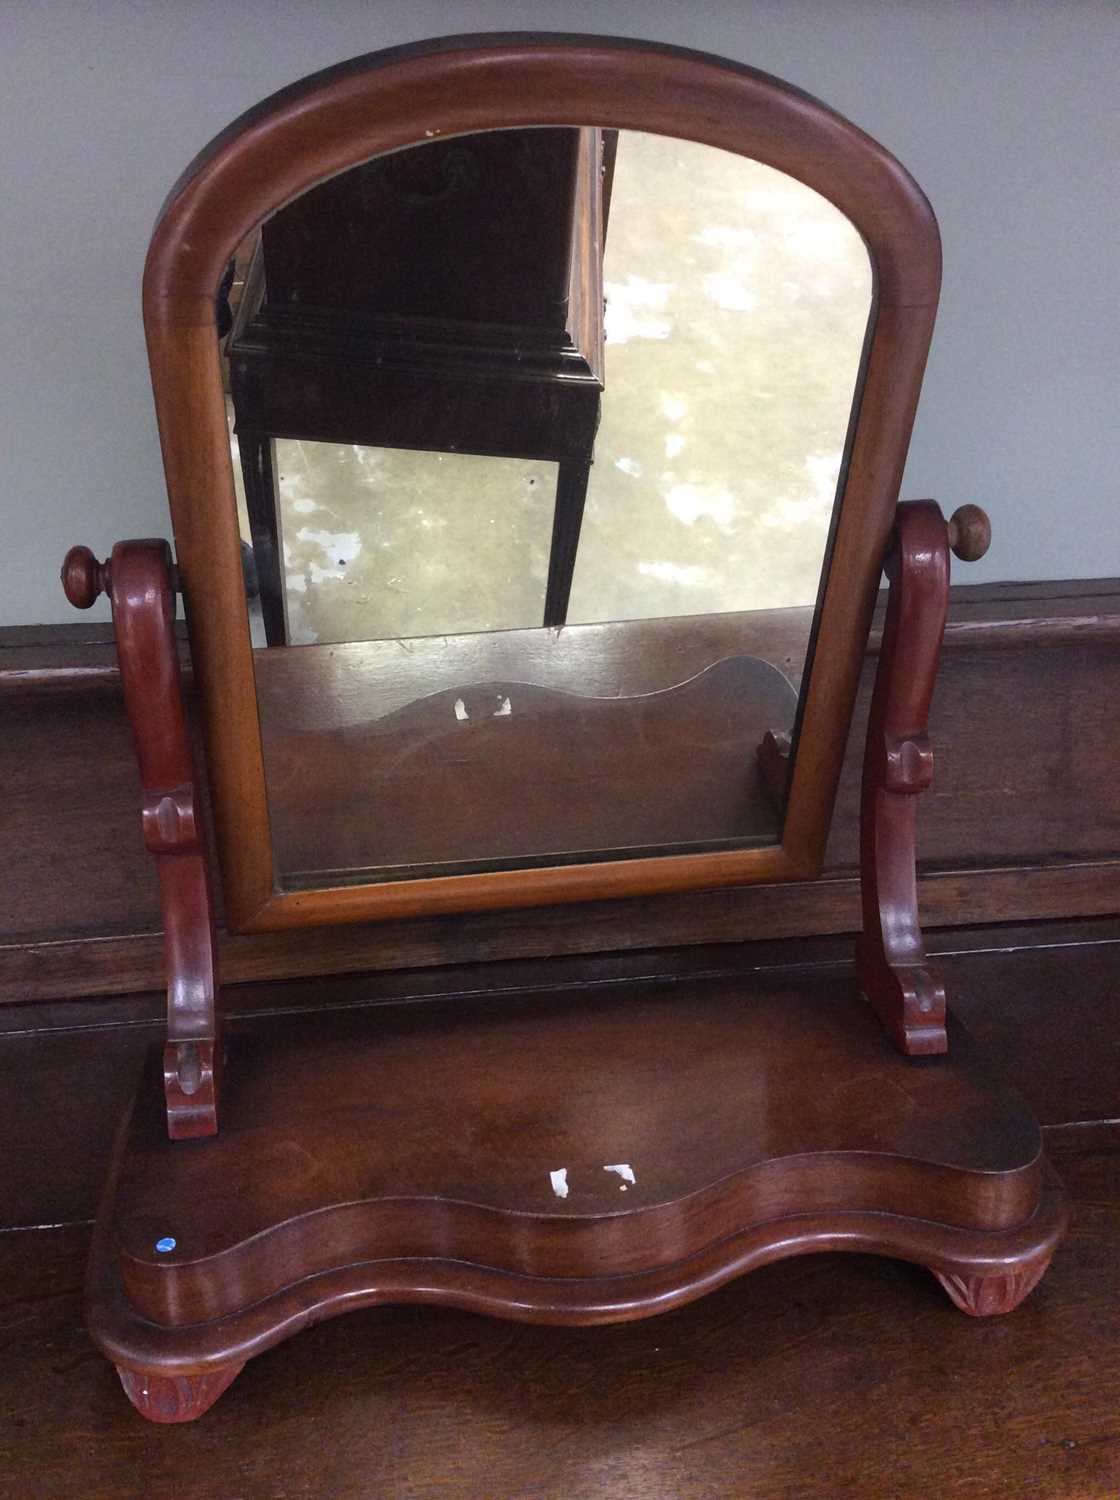 Victorian mahogany toilet mirror